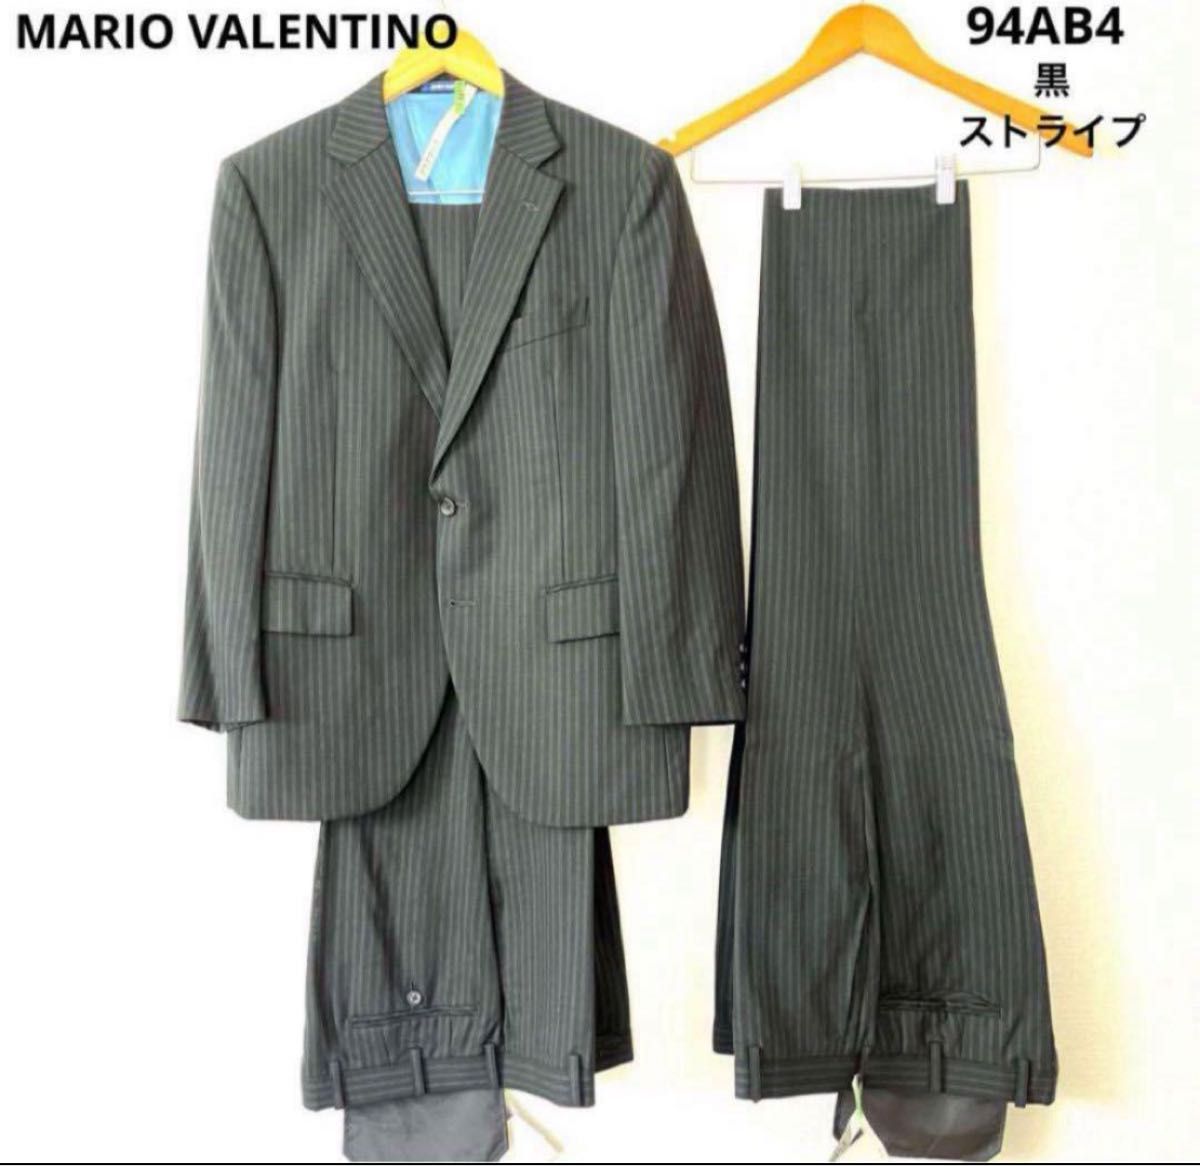 MARIO VALENTINO 2パンツスーツ ウール AB4 黒 ストライプ スーツ セットアップ ジャケット グレー